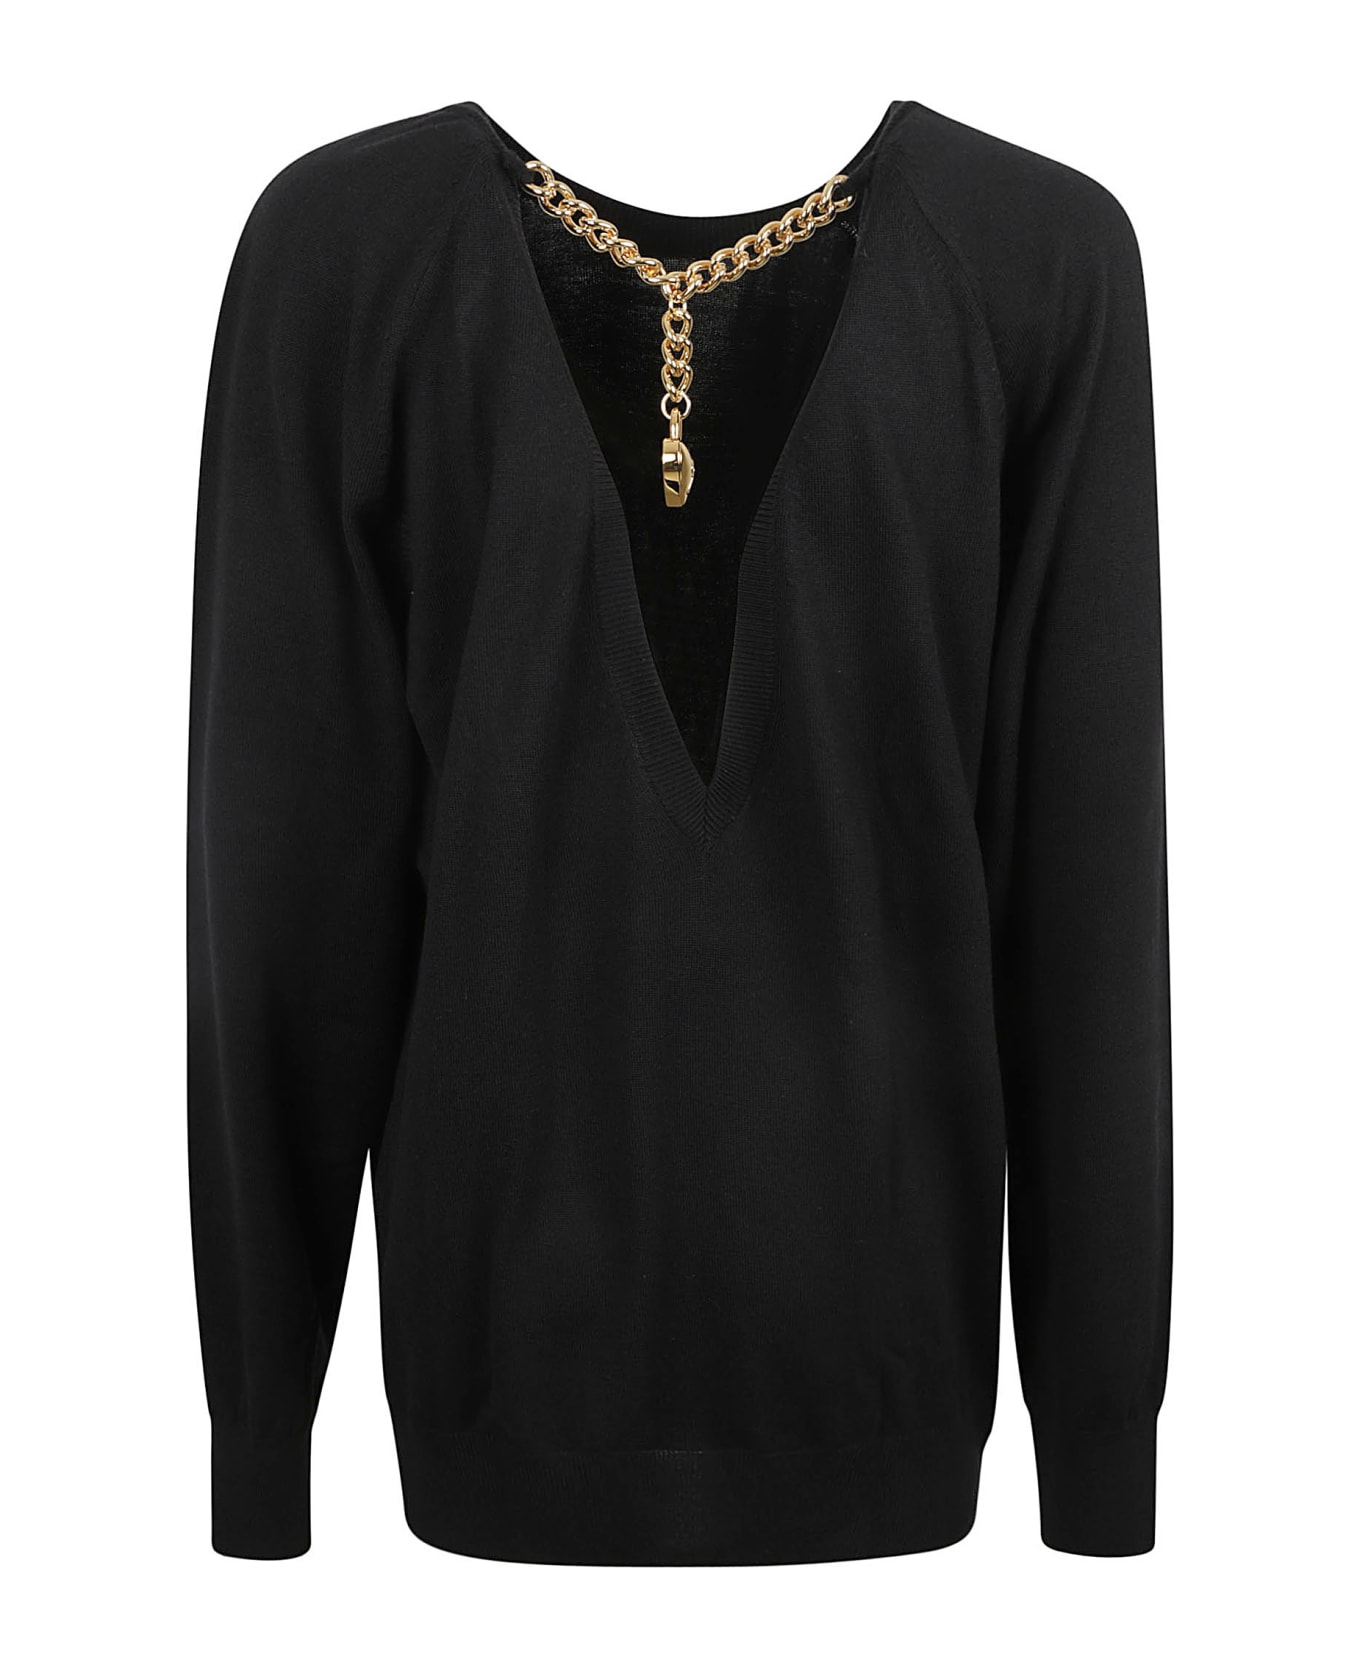 Moschino Round Neck Sweater - Black